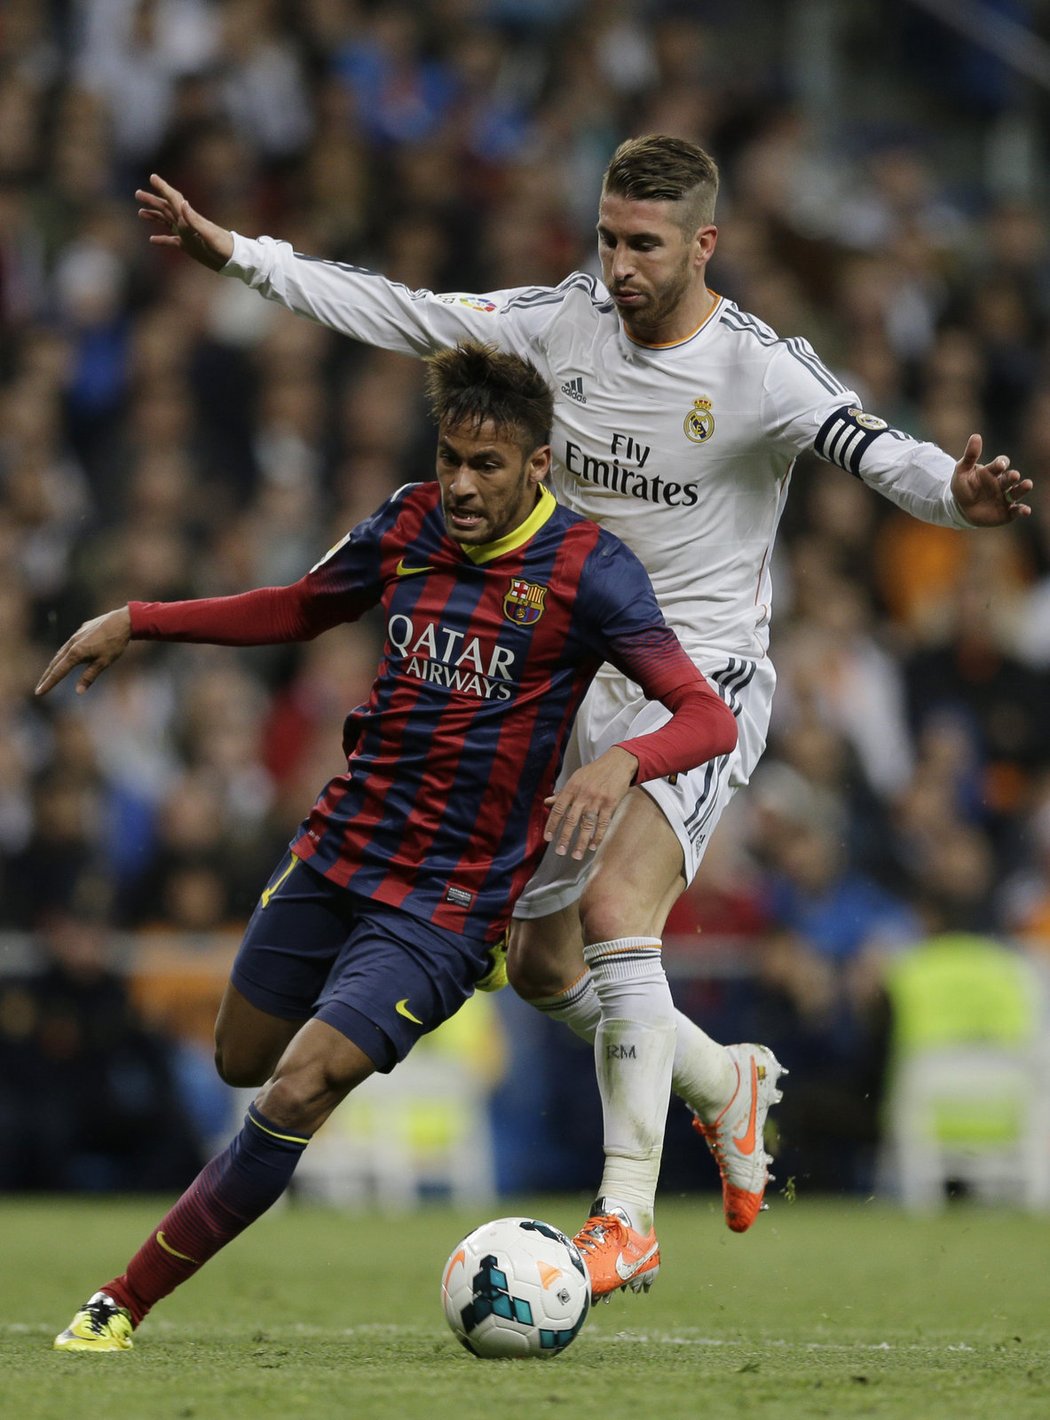 Útočník Barcelony Neymar uniká v El Clásicu obránci Ramosovi z Realu. Následný pád ale vzbudil velké emoce